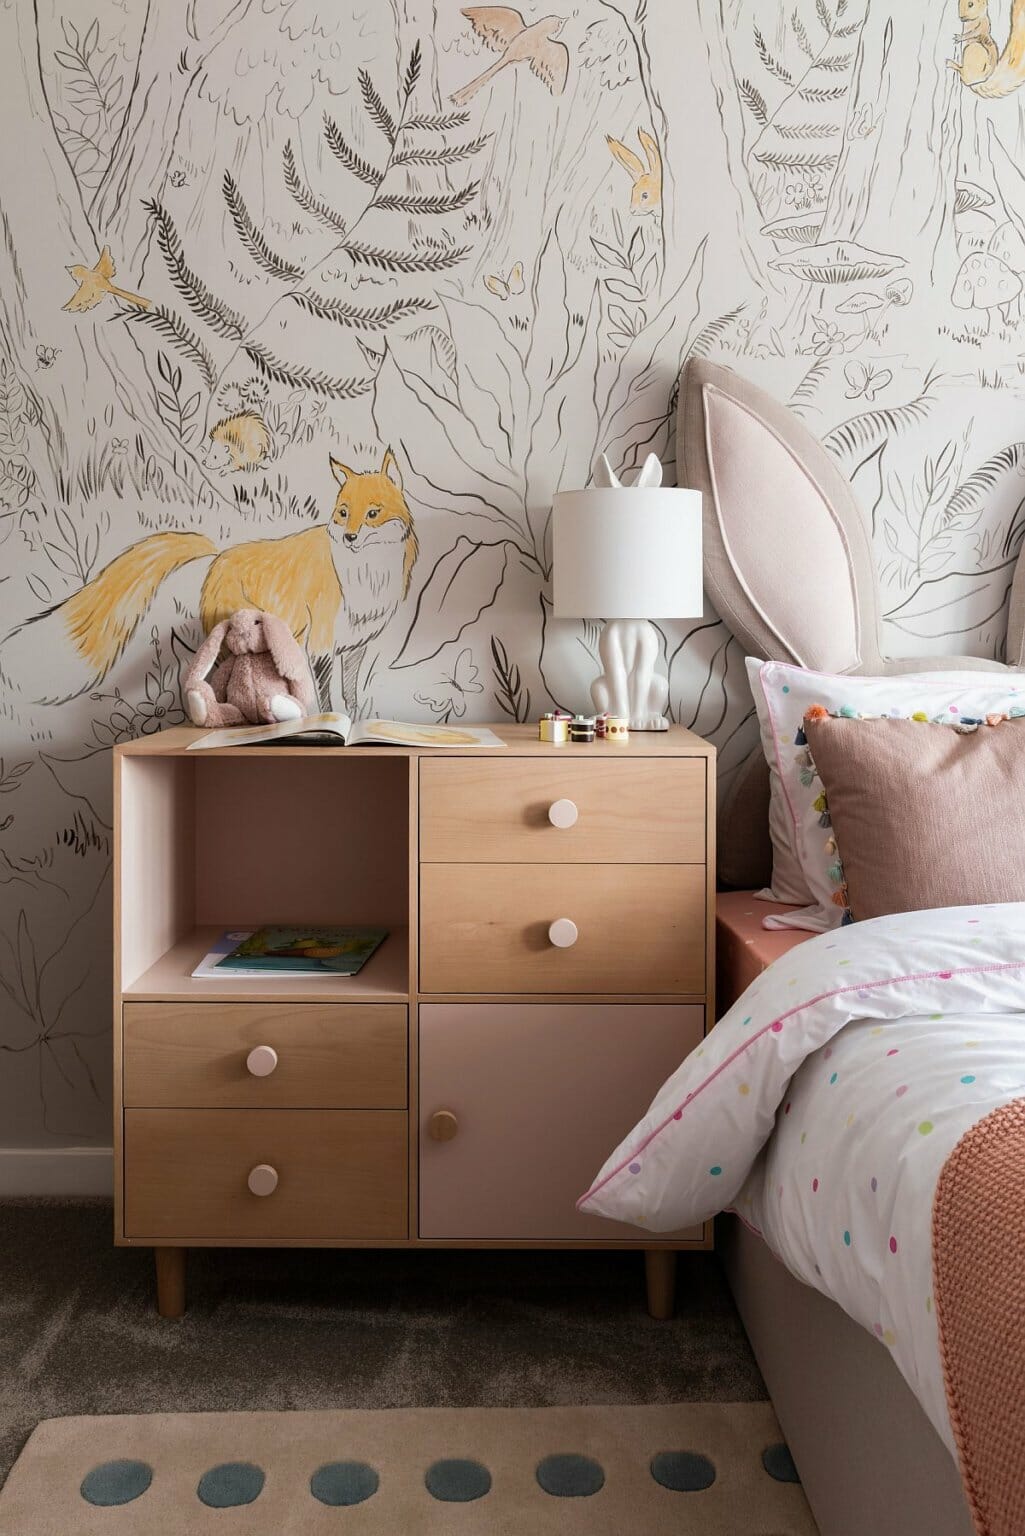 hình ảnh phòng ngủ con gái ấn tượng với giấy dán tường họa tiết rừng nhiệt đới